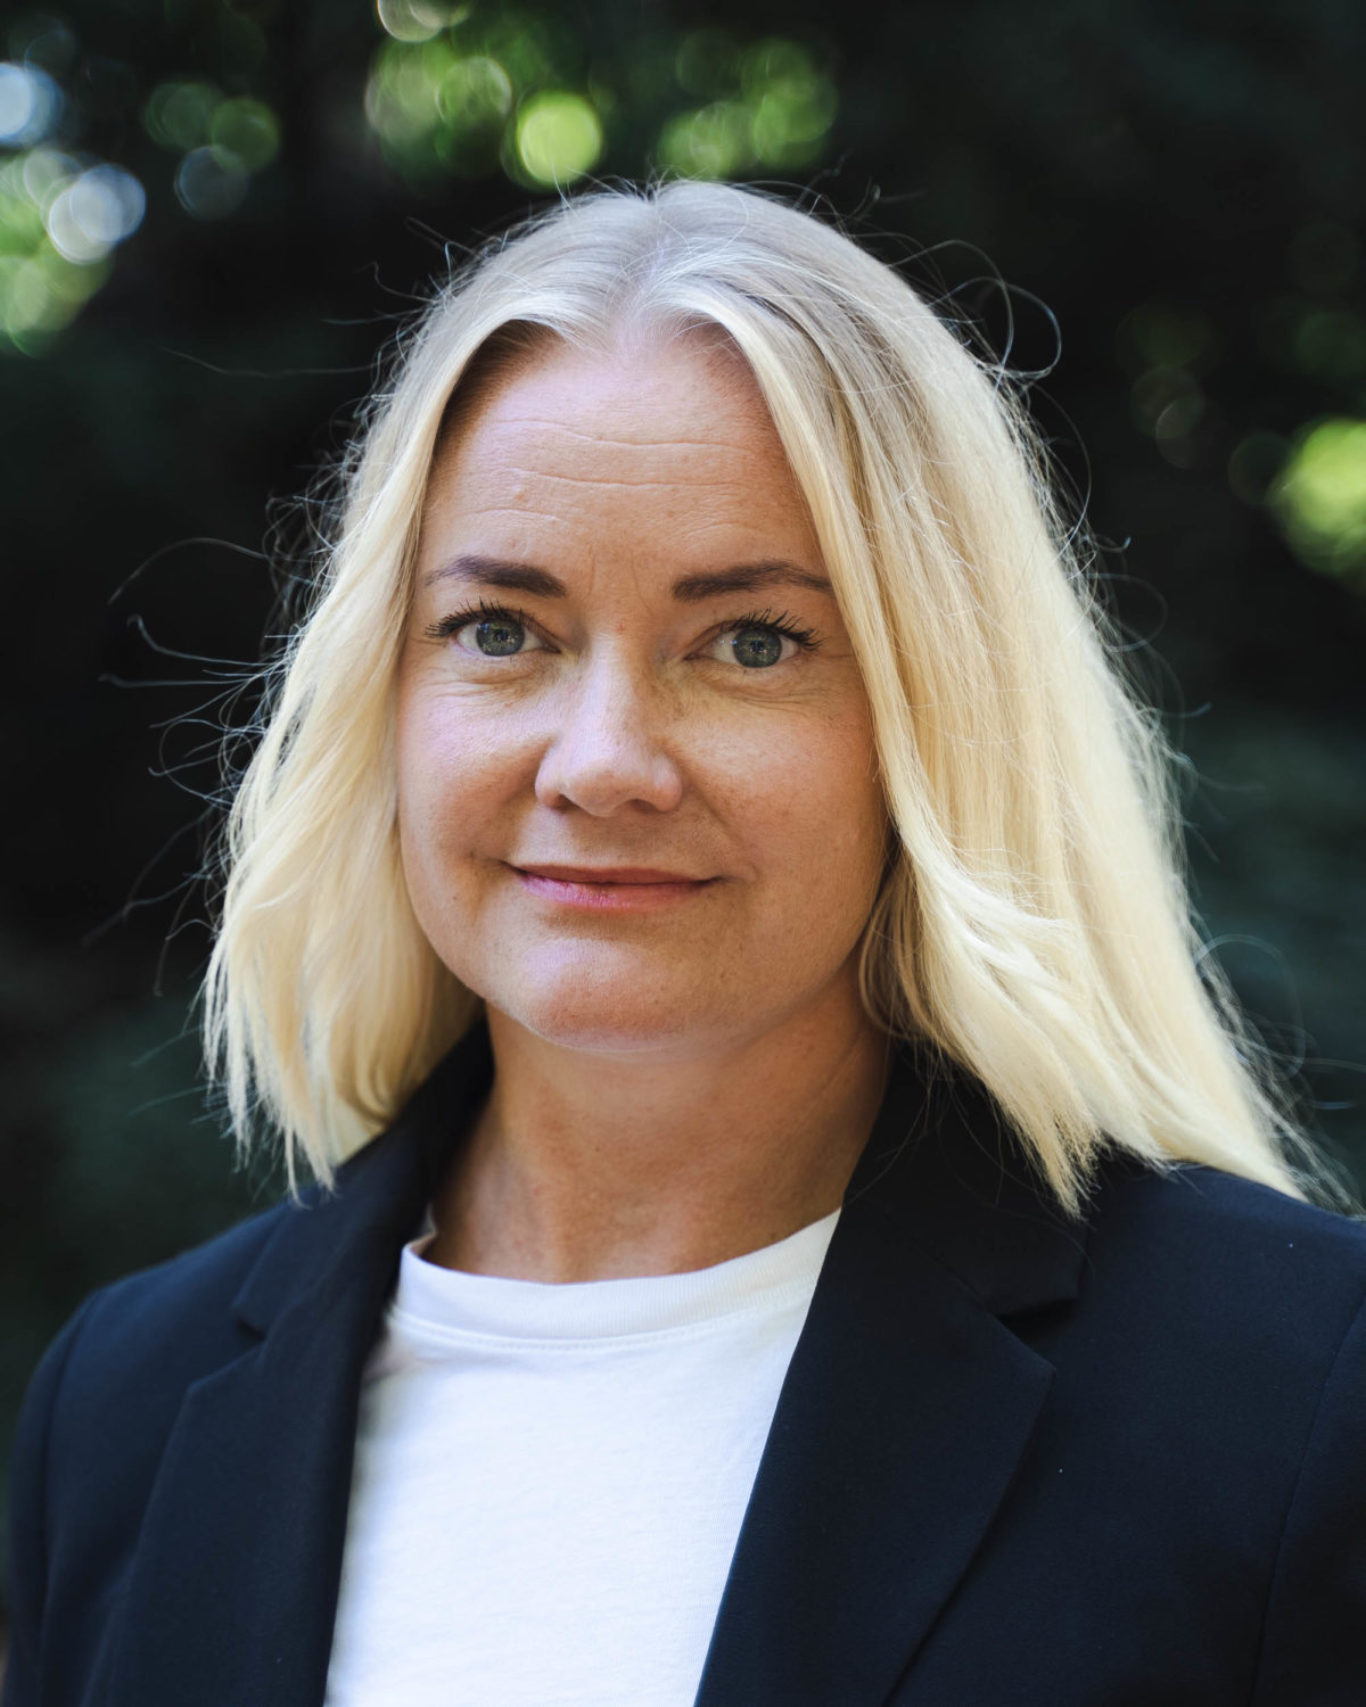 Sara Anderhov är näringslivsutvecklare på Region Skåne, som ger finansiellt stöd och rådgivning till småföretag inom flera affärsutvecklingsområden